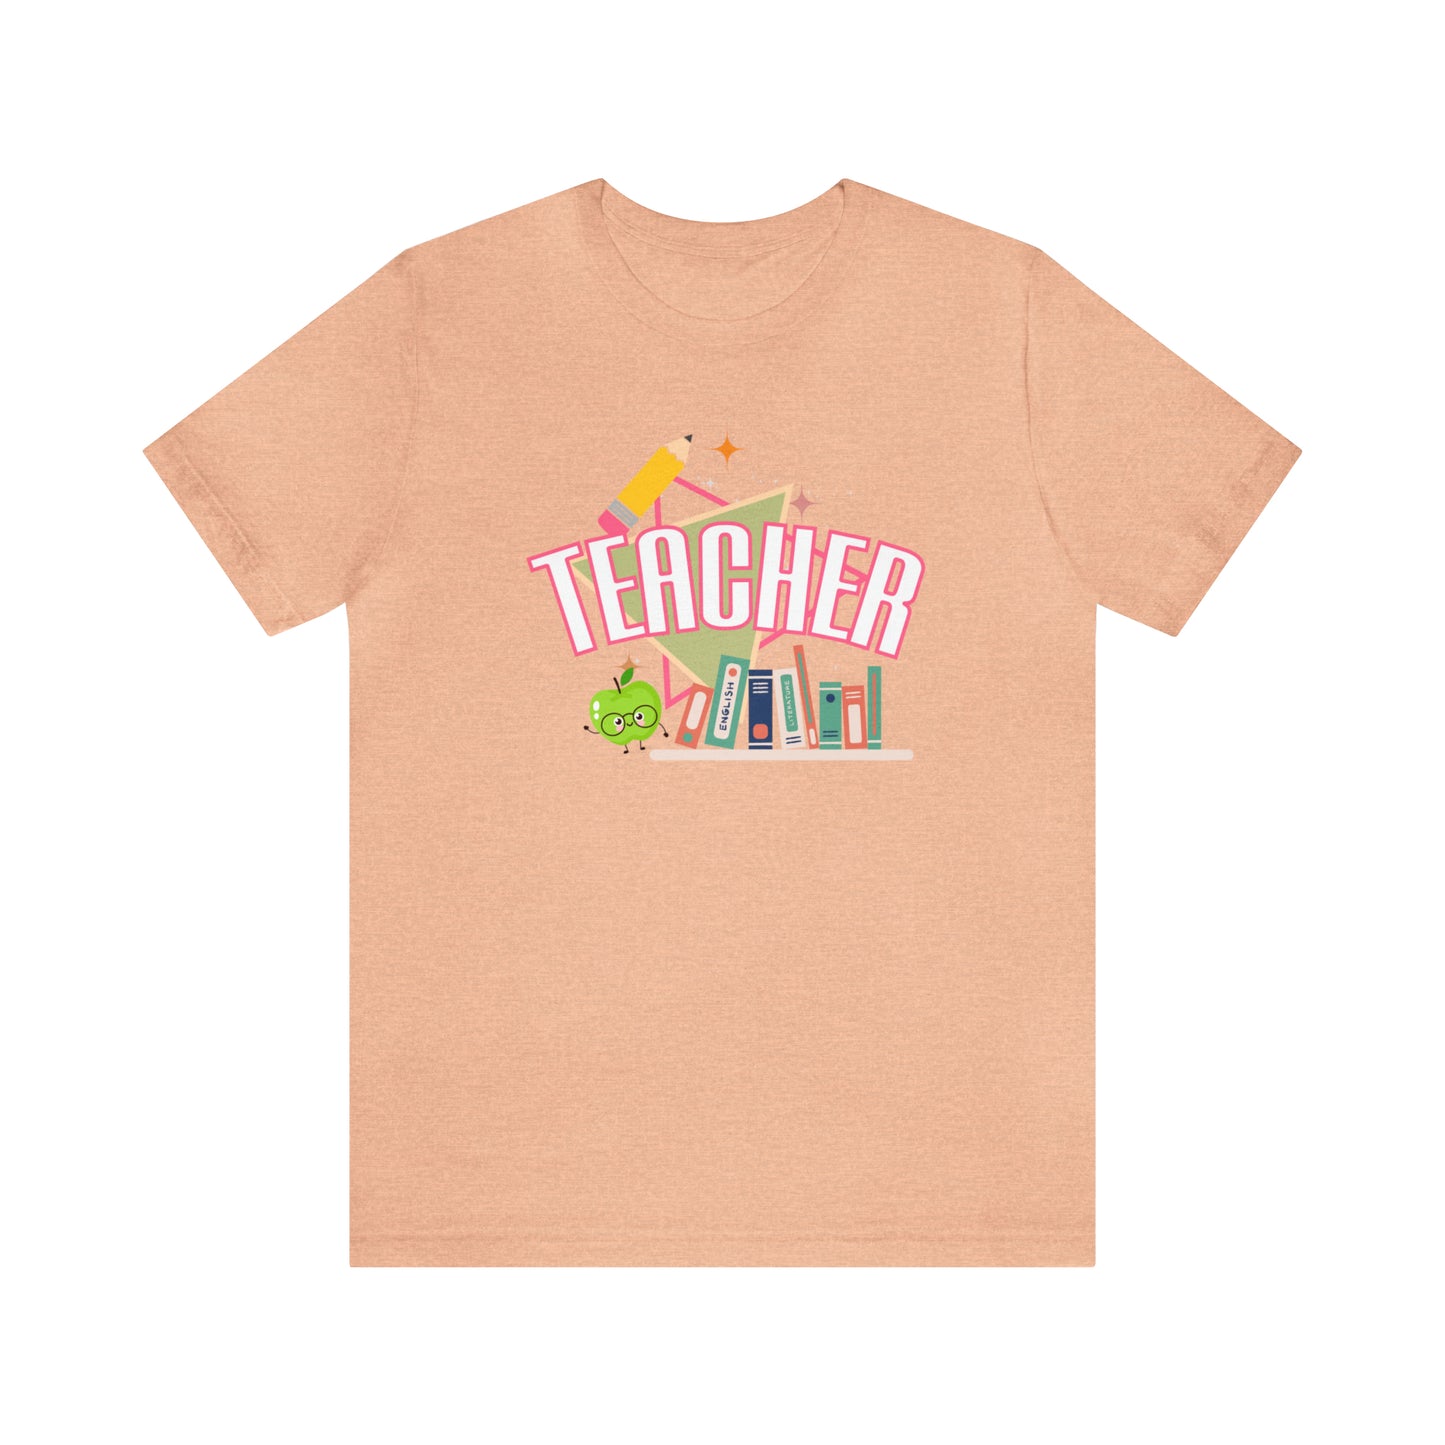 Pink Teacher Shirt, colorful teacher shirt, Teacher shirt, 90s shirt, 90s teacher shirt, colorful school shirt, T541